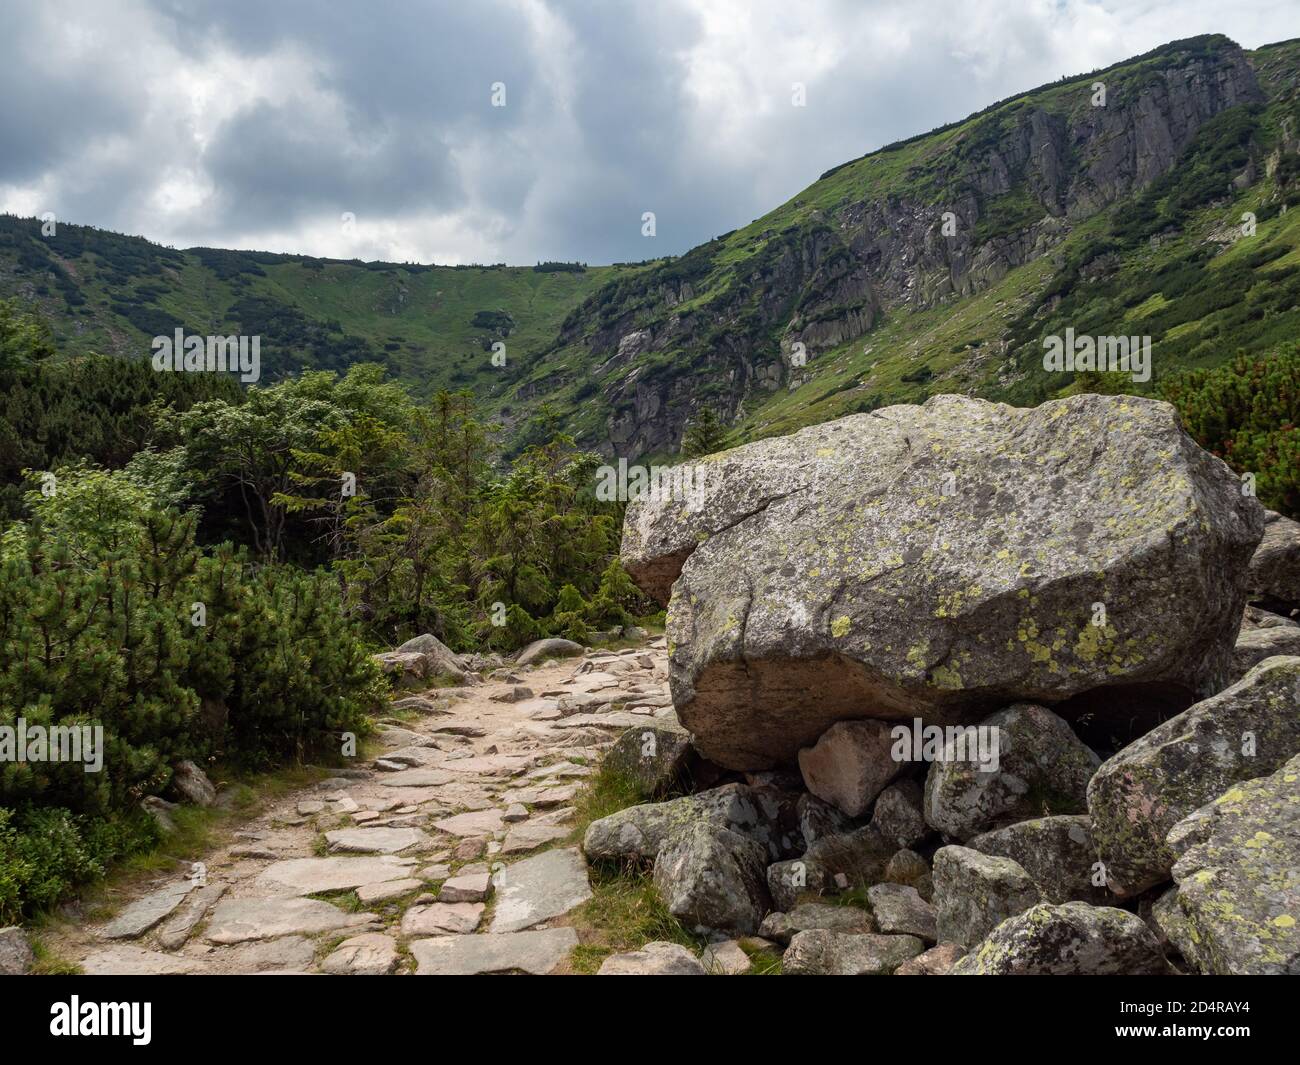 Mountain trail, Karkonosze National Park Stock Photo